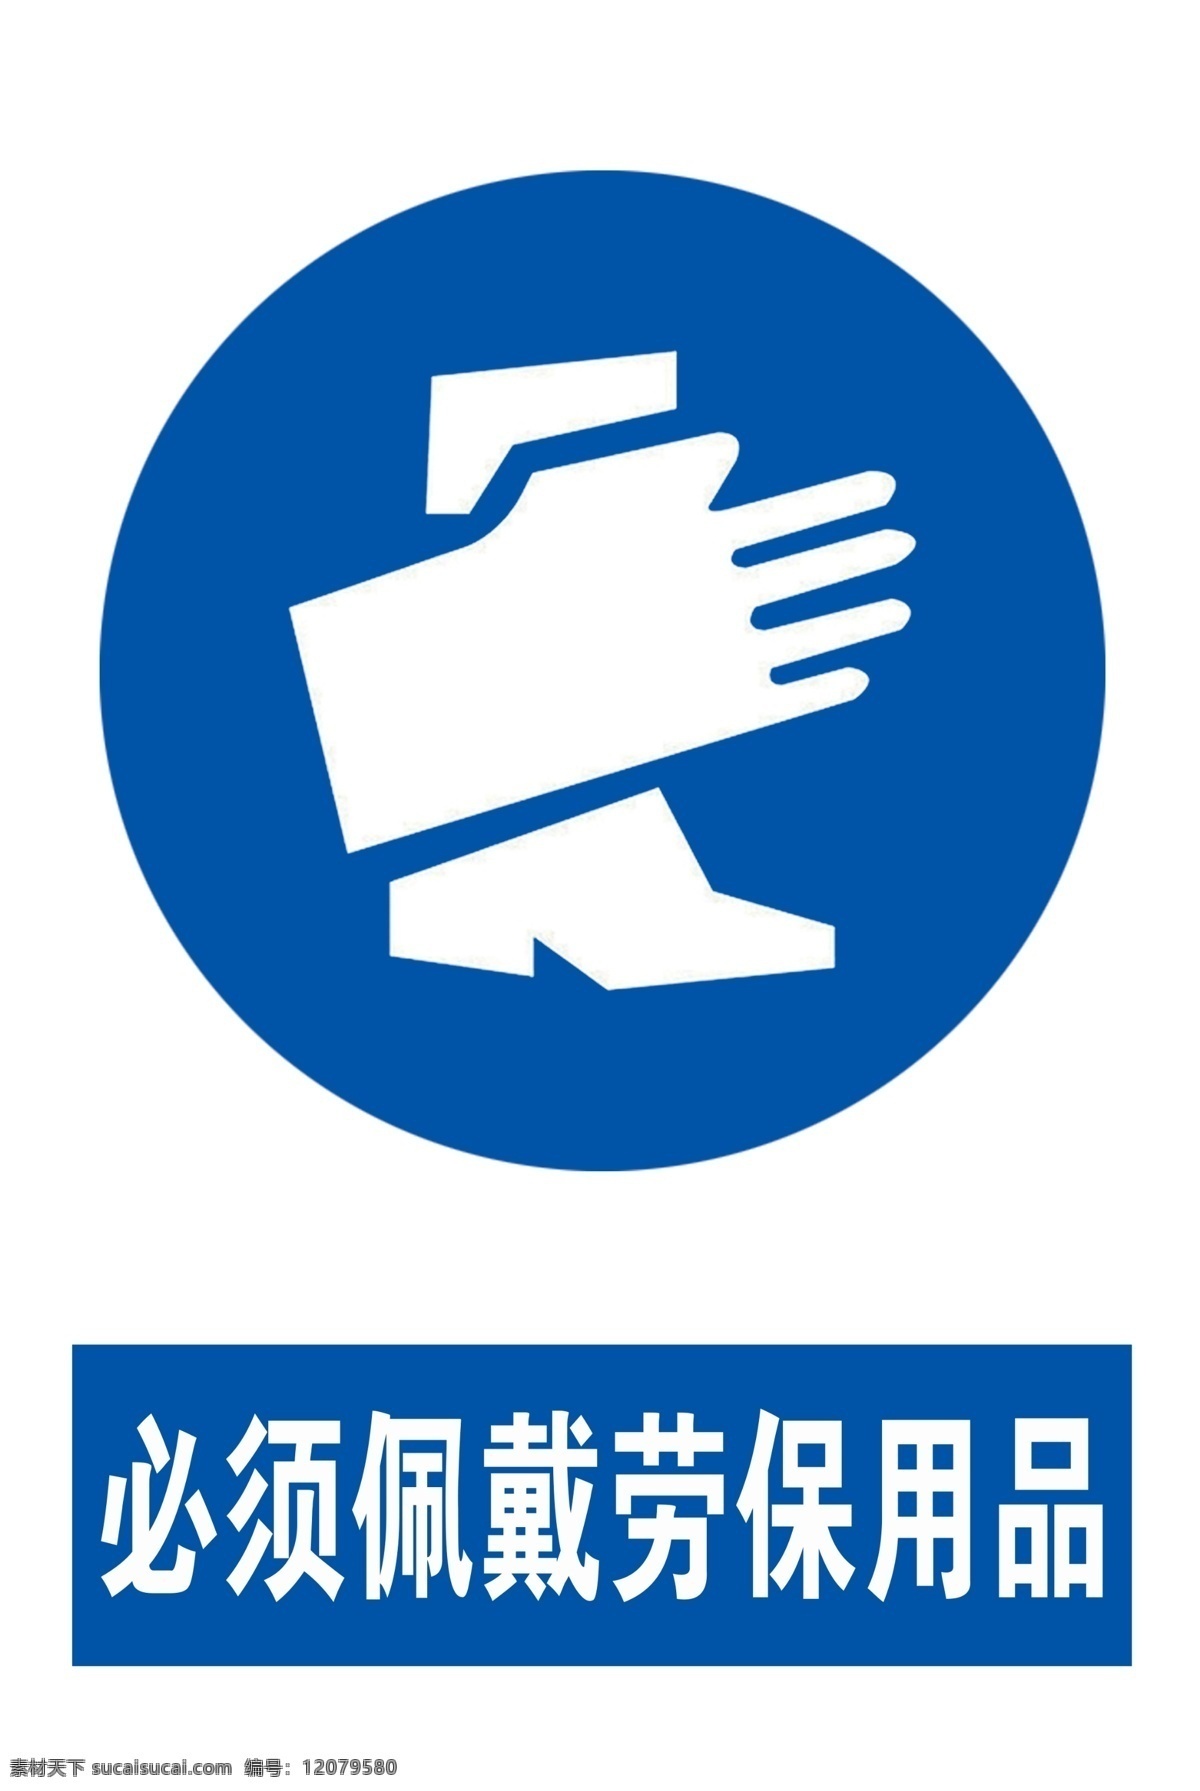 佩戴 劳保用品 佩戴劳保用品 标志 佩戴手套 公共标识 安全标志 标志图标 公共标识标志